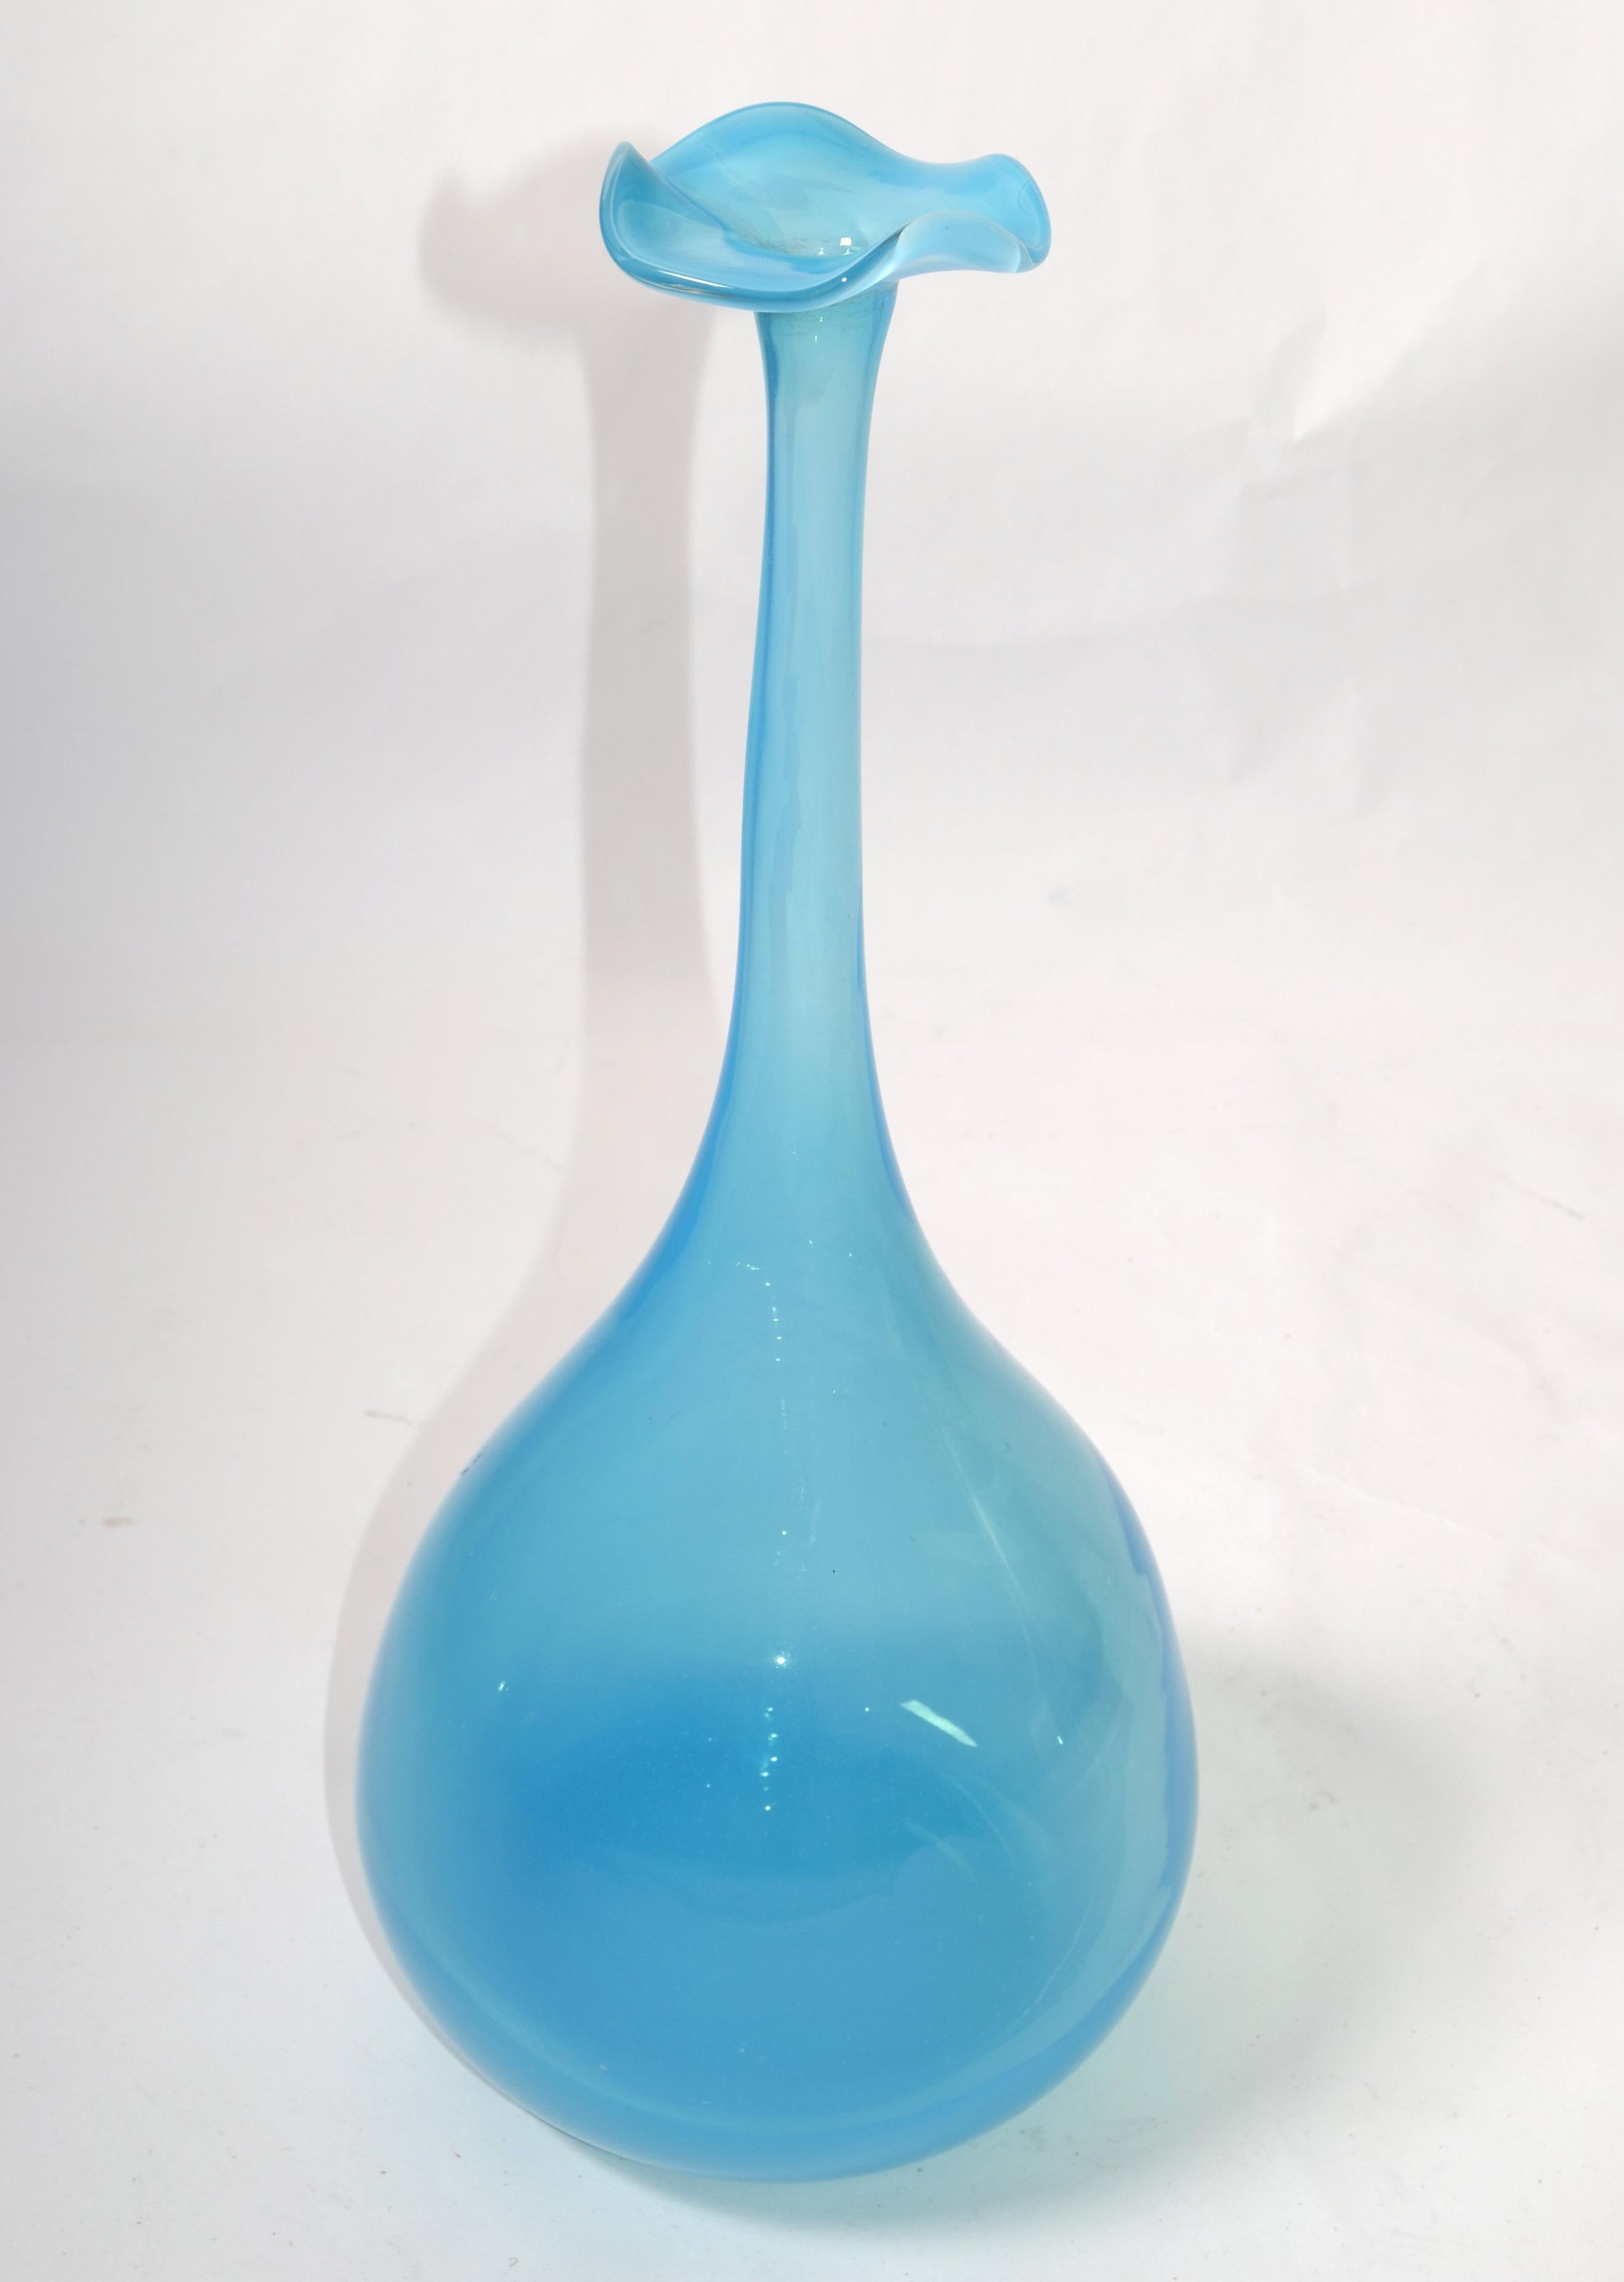 Kjell Engman Kosta Boda Style Blue Crystal Bud Art Vase Scandinavian Modern 1990 For Sale 5